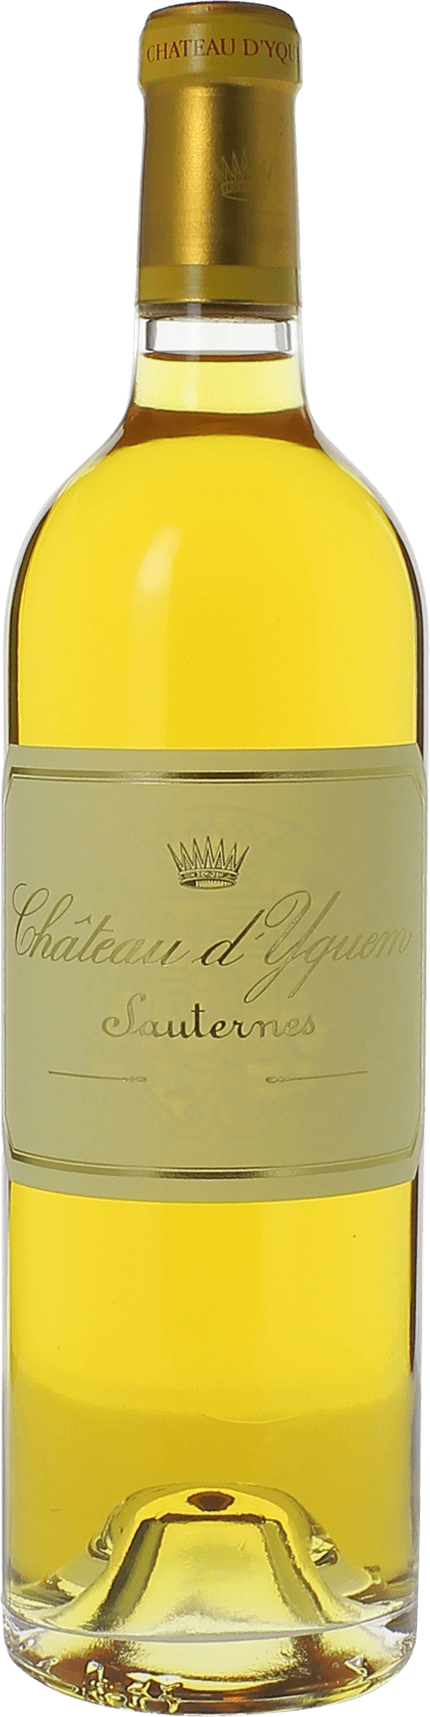 Yquem (disponible dbut avril) 1908 1er Grand cru class Sauternes, Bordeaux blanc